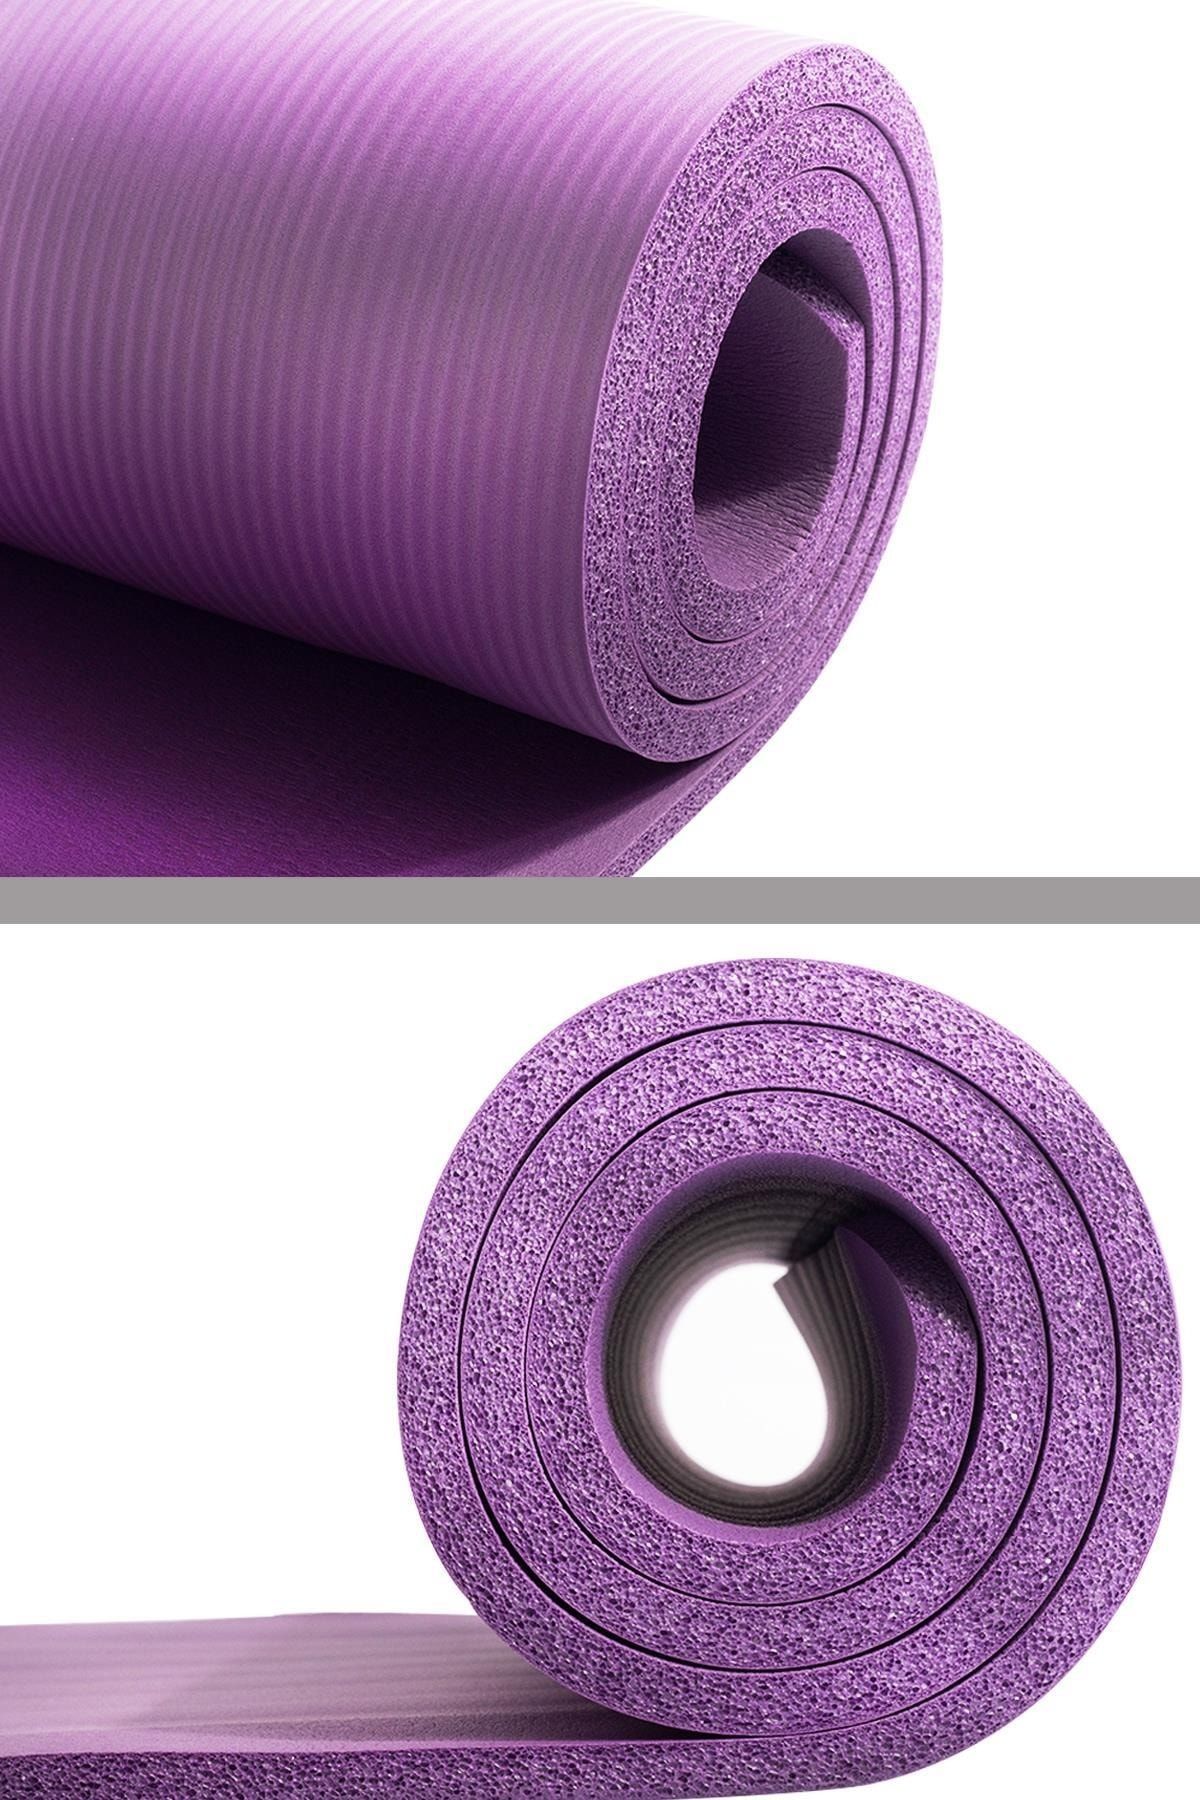 Konfor Zemin 10 mm Taşıma Askılı Pilates Minderi Yoga Matı